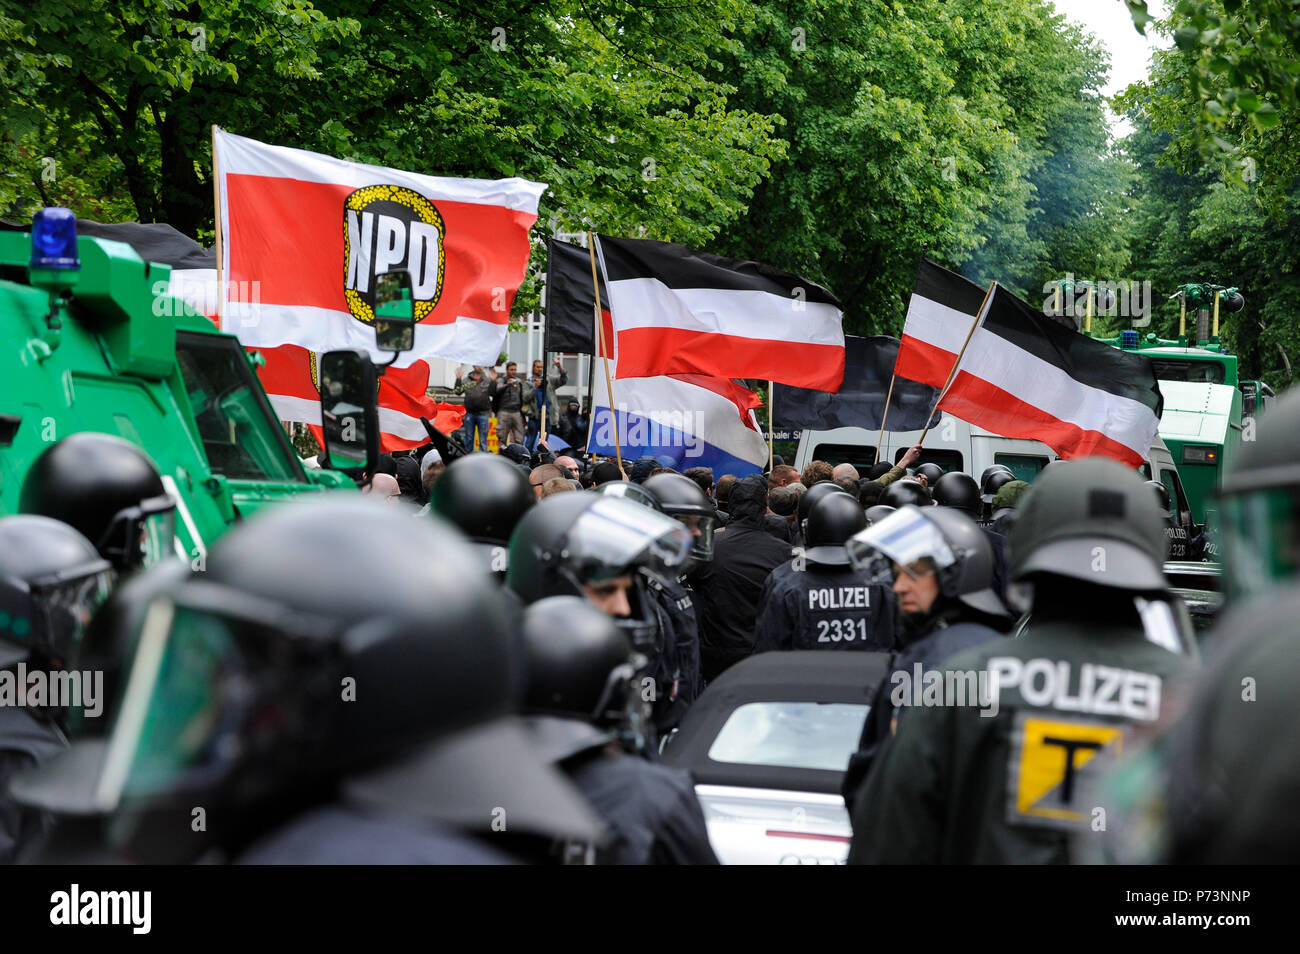 Germania, rally del nazismo e del diritto dei gruppi estremisti con bandiere di ala destra parte NPD in amburgo, scortato dalle forze di polizia per evitare scontri con la sinistra anti-manifestanti Foto Stock